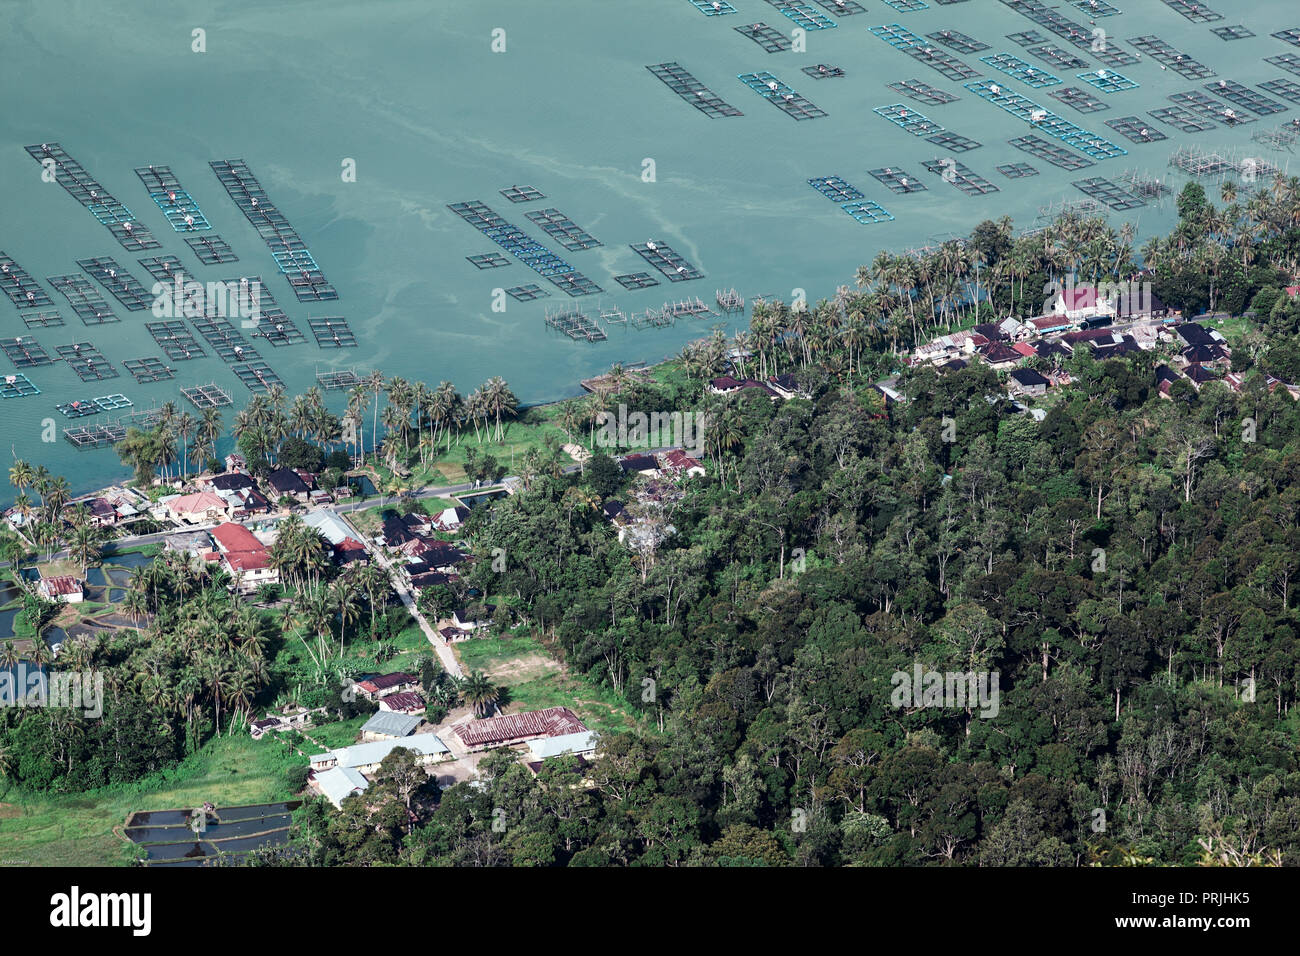 Pisciculture sur les rives du lac Maninjau, Sumatra, Indonésie Banque D'Images